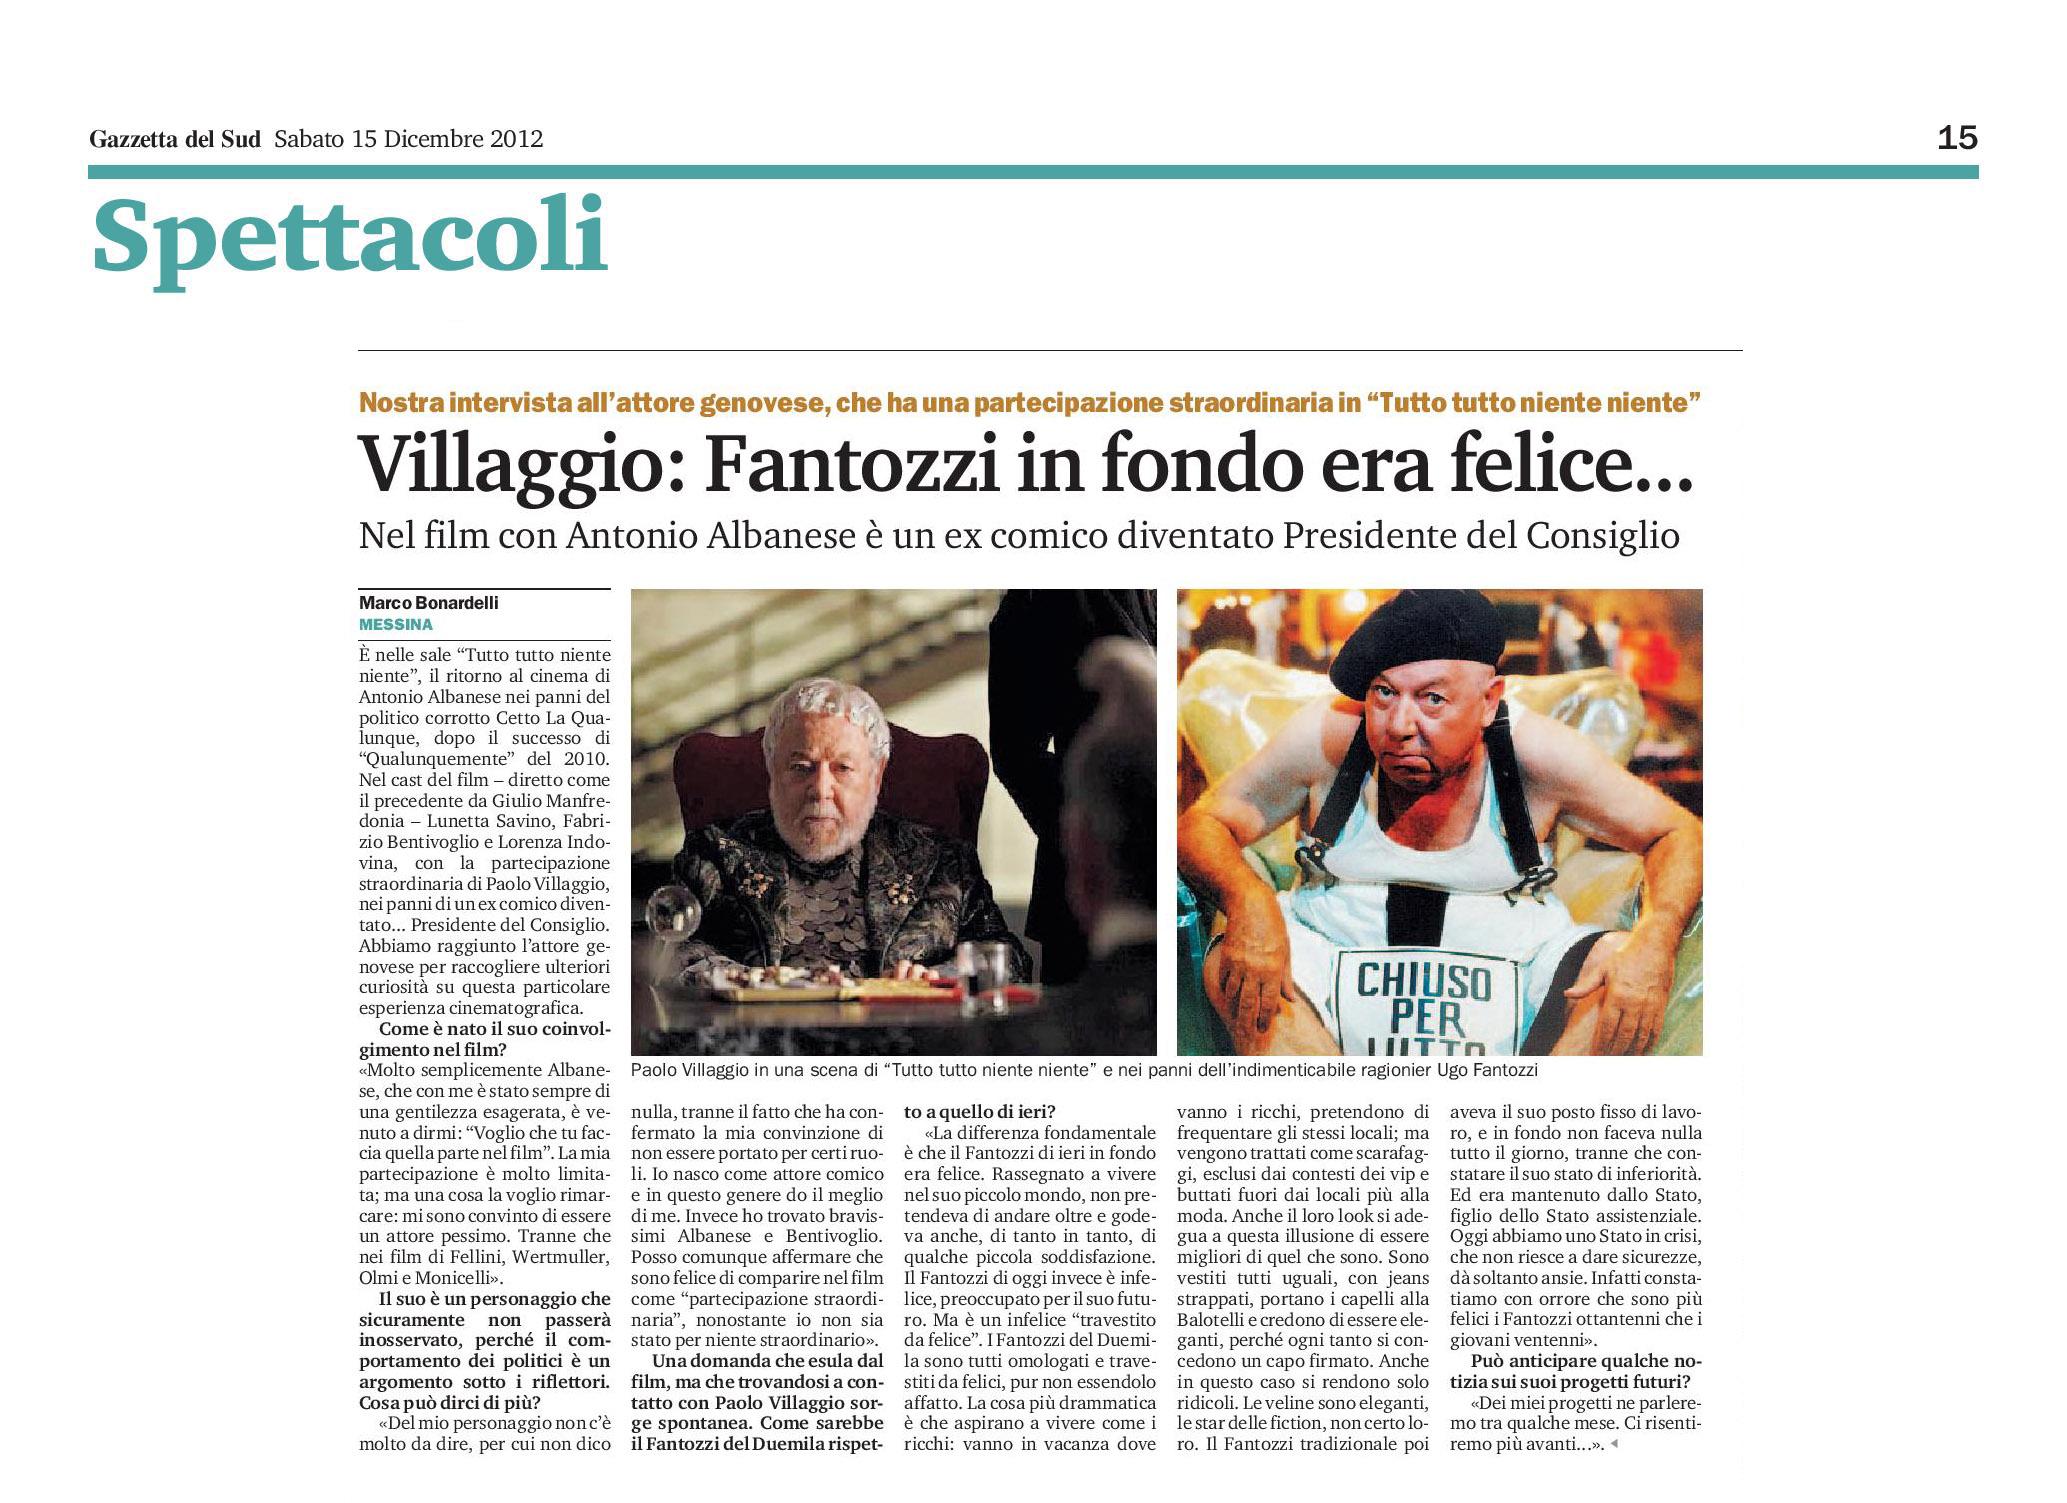 8 - Paolo Villaggio - In fondo Fantozzi era felice - Gazzetta del Sud - 15 dicembre 2012.jpg